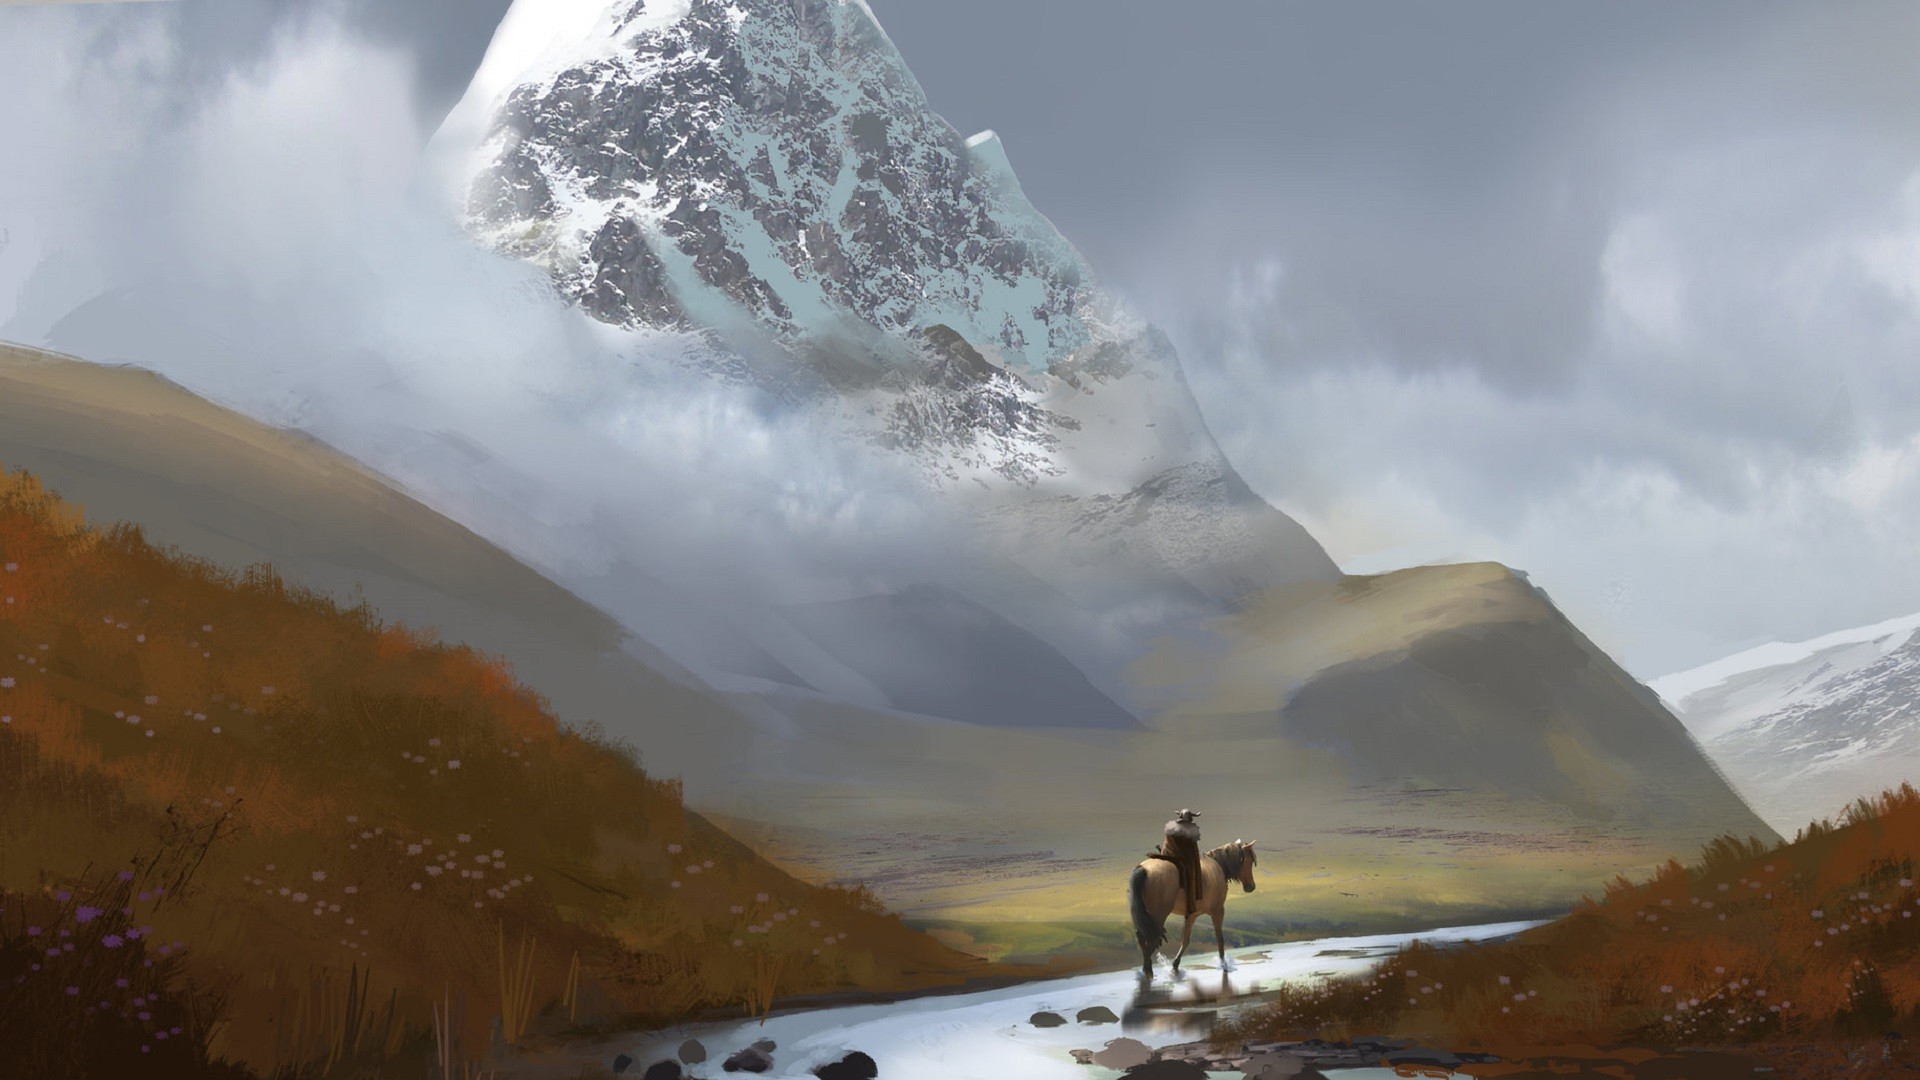 artwork, Digital Art, Landscape, Mountain, River, Snowy Peak, Horse, Men, Field, Hill Wallpaper